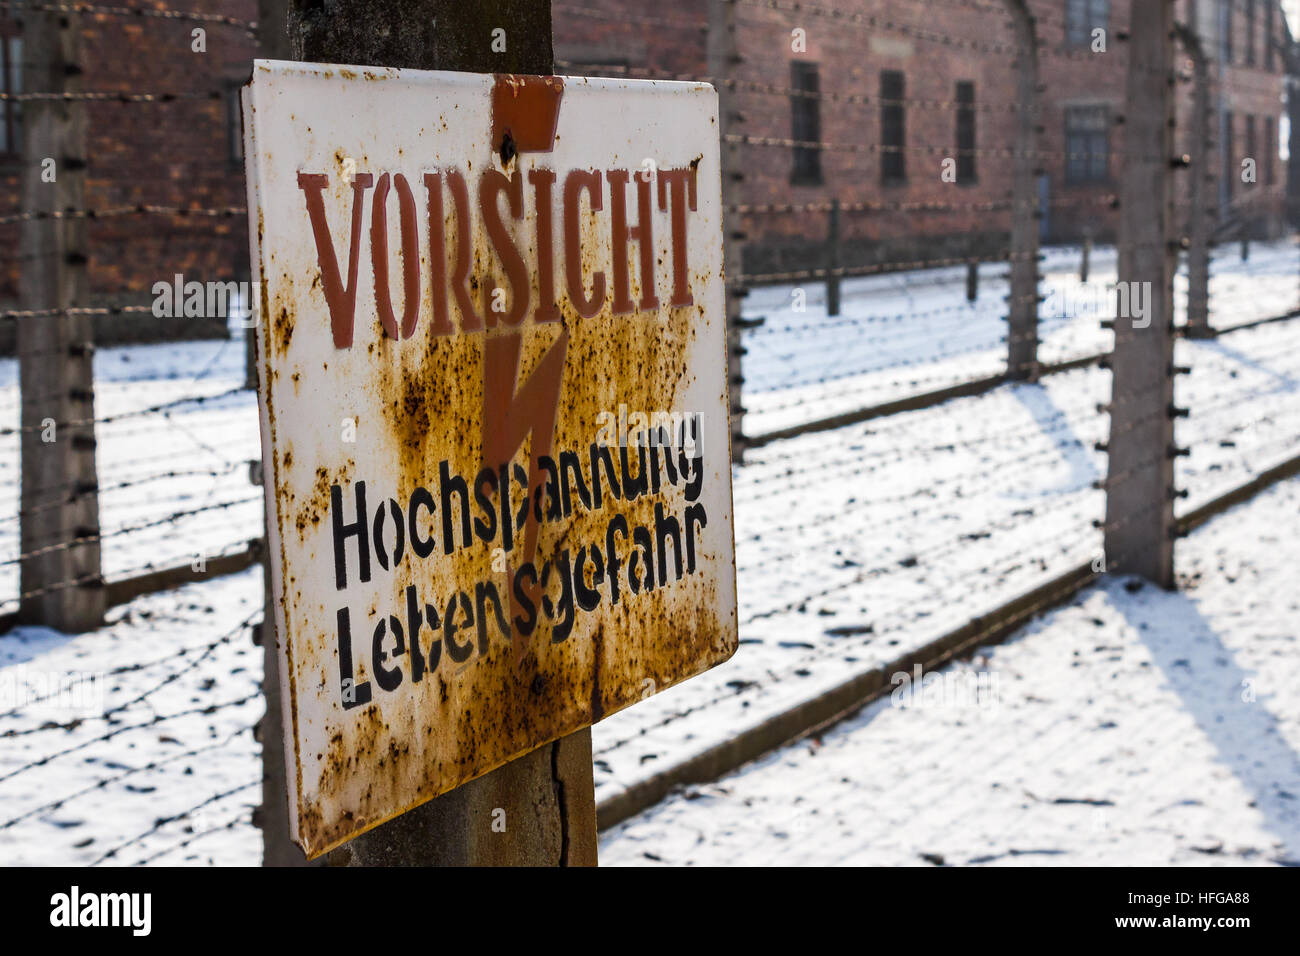 Cartel "vorsicht hochspannung lebensgefahr' fue visto delante de algunas de las cercas electrificadas que estaban en Auschwitz. Foto de stock